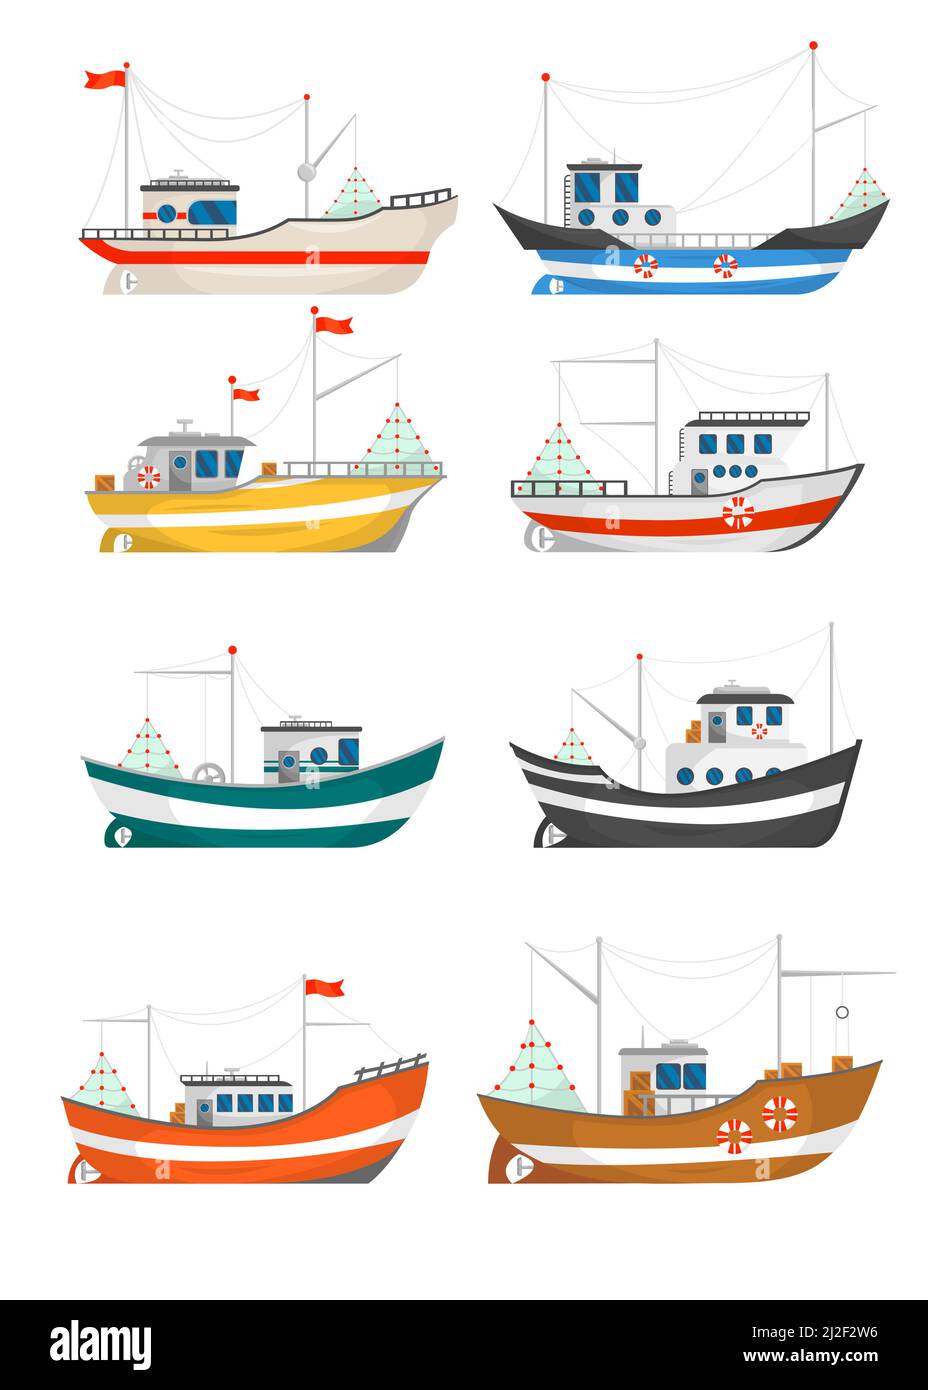 Sammlung von Fischerbooten Vektorgrafiken. Fischer-Trawler, Schiffe mit Kränen, die Netze auf Weiß heben. Für die Lebensmittel- und Fischindustrie, Stock Vektor